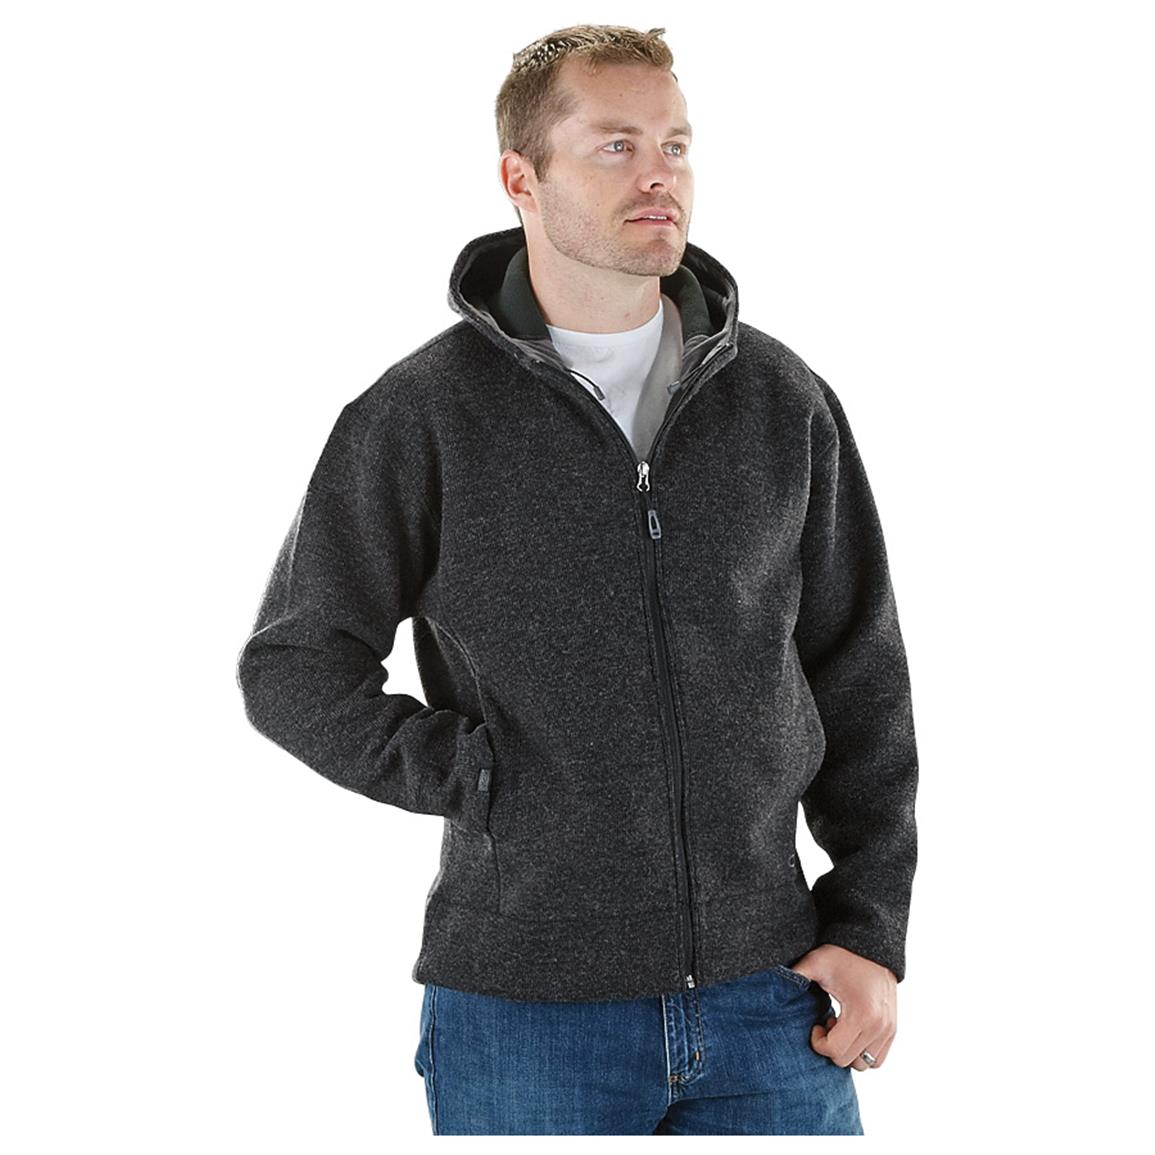 Sherpa - lined Full - zip Hoodie - 212148, Sweatshirts & Hoodies at ...